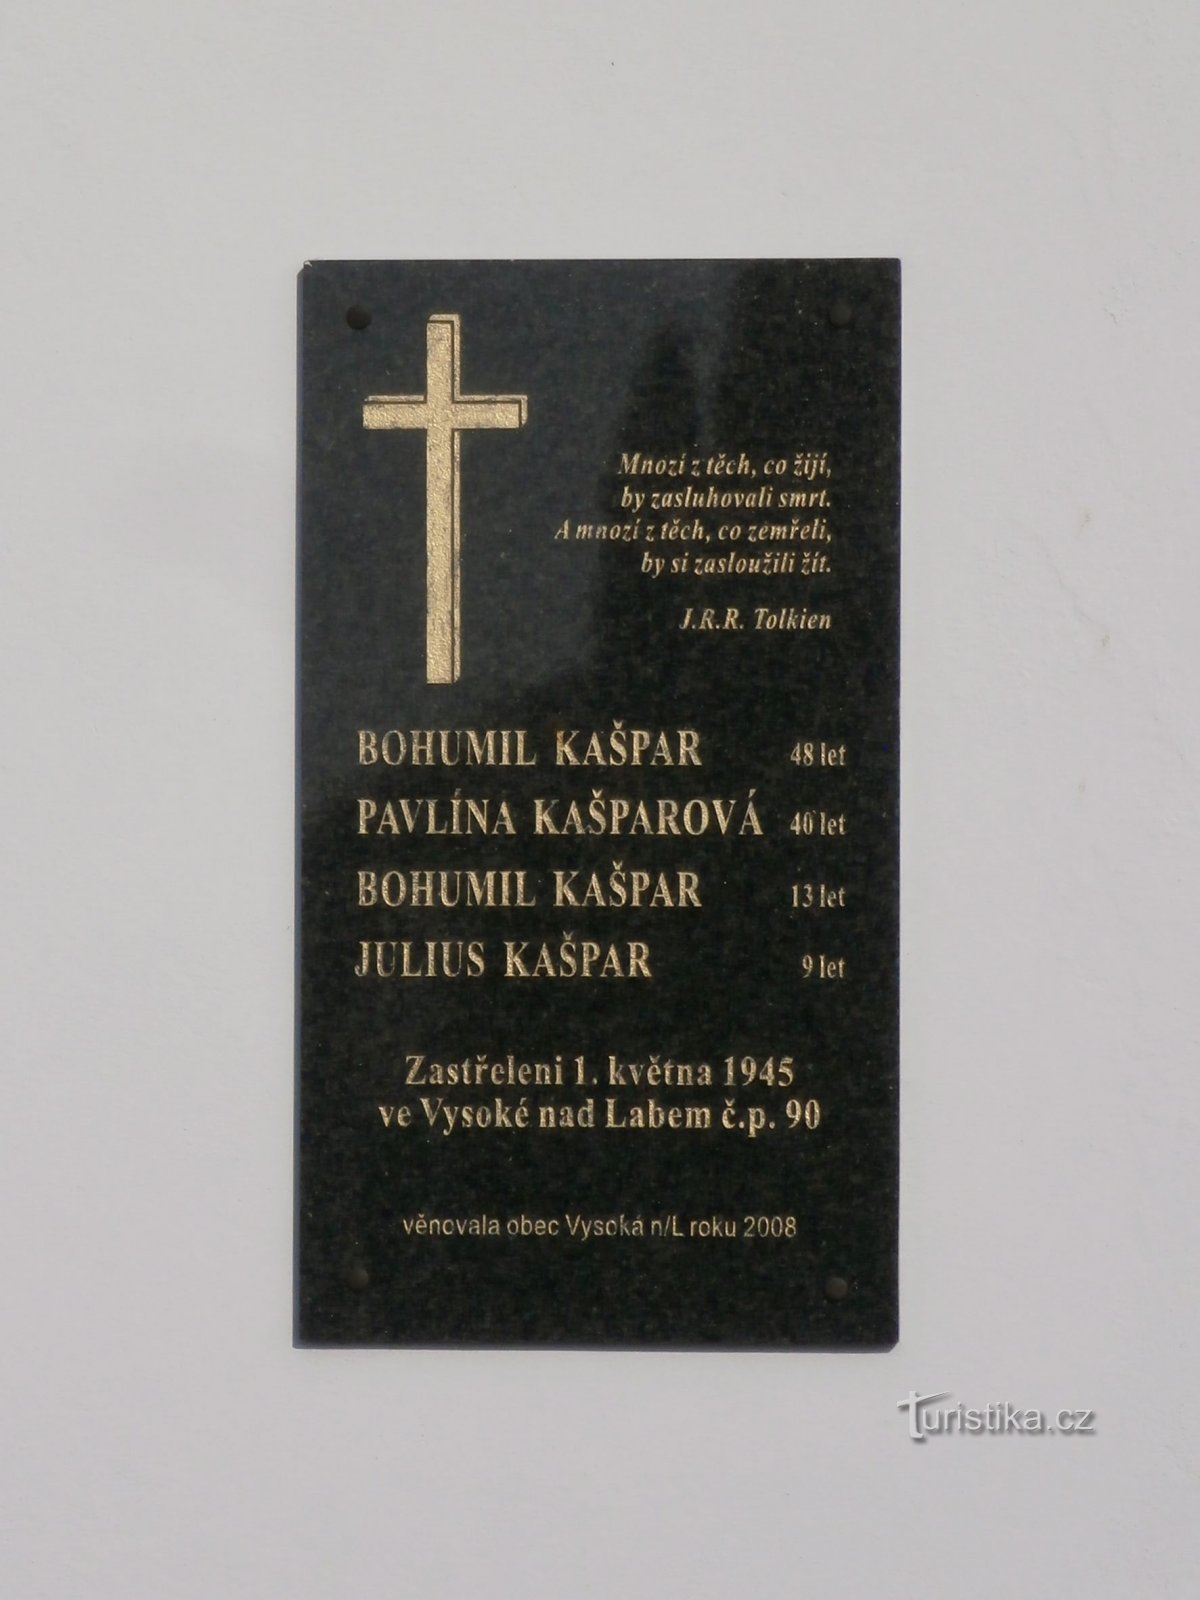 Placă memorială pentru familia Kašparov ucisă (Vysoká nad Labem, 13.2.2017)